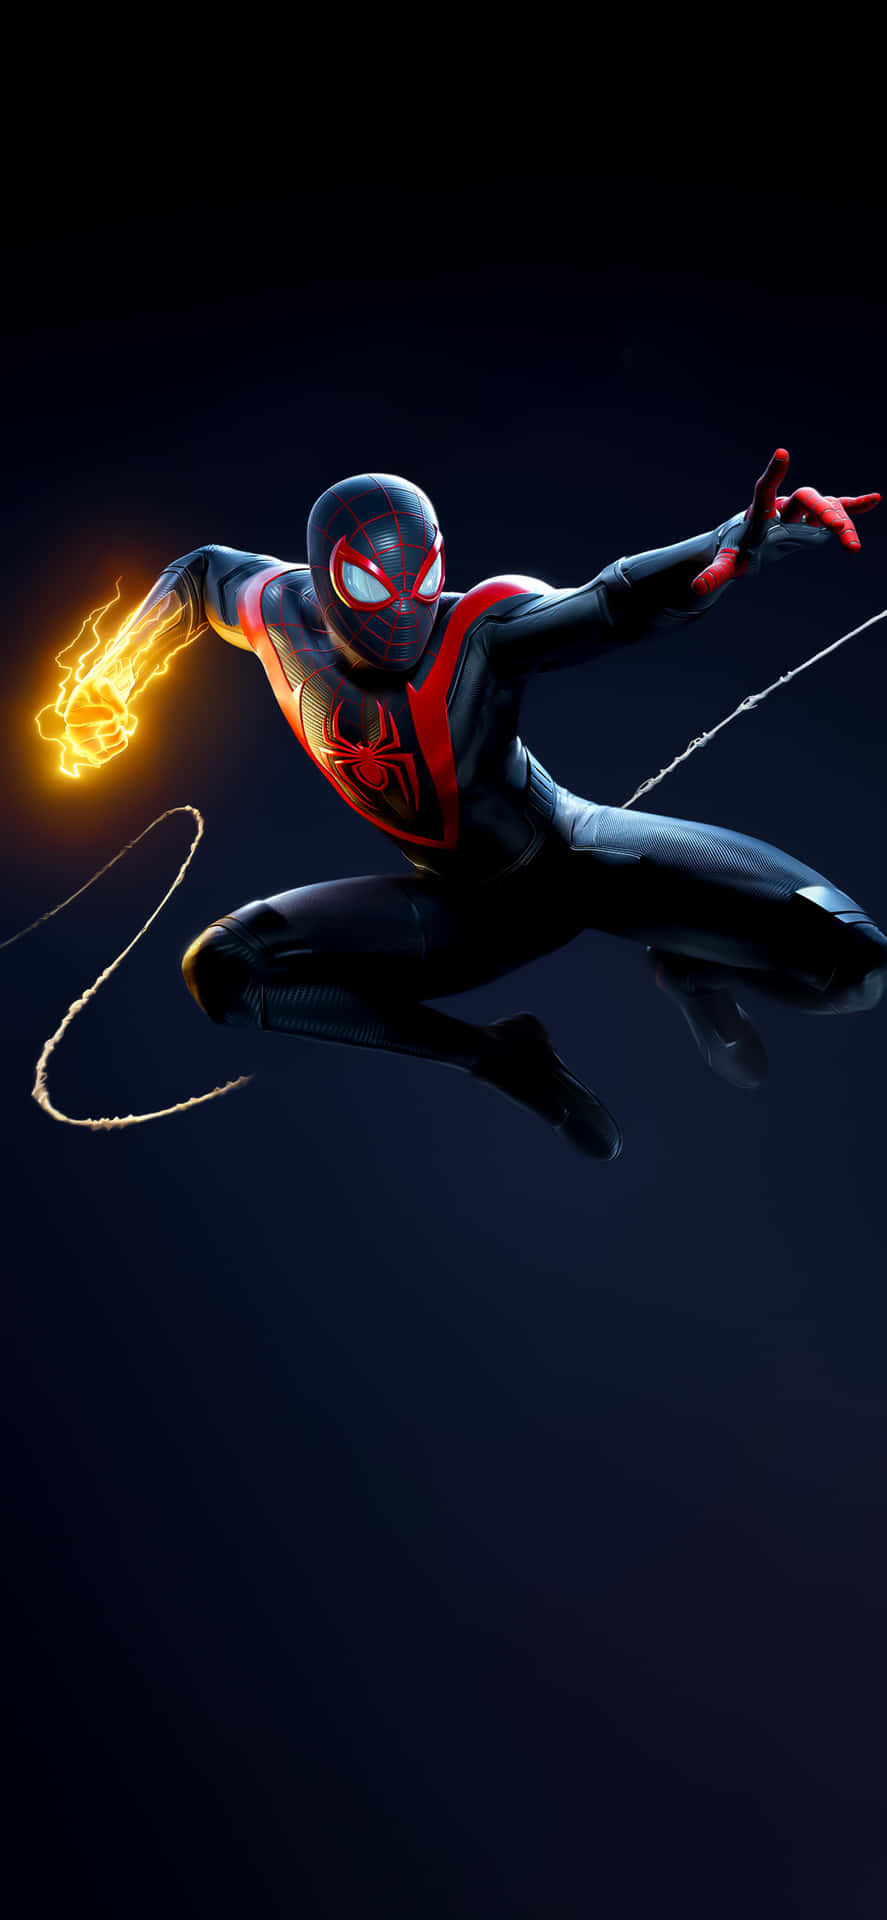 Spil The Amazing Spider-Man spil på din iPhone Wallpaper